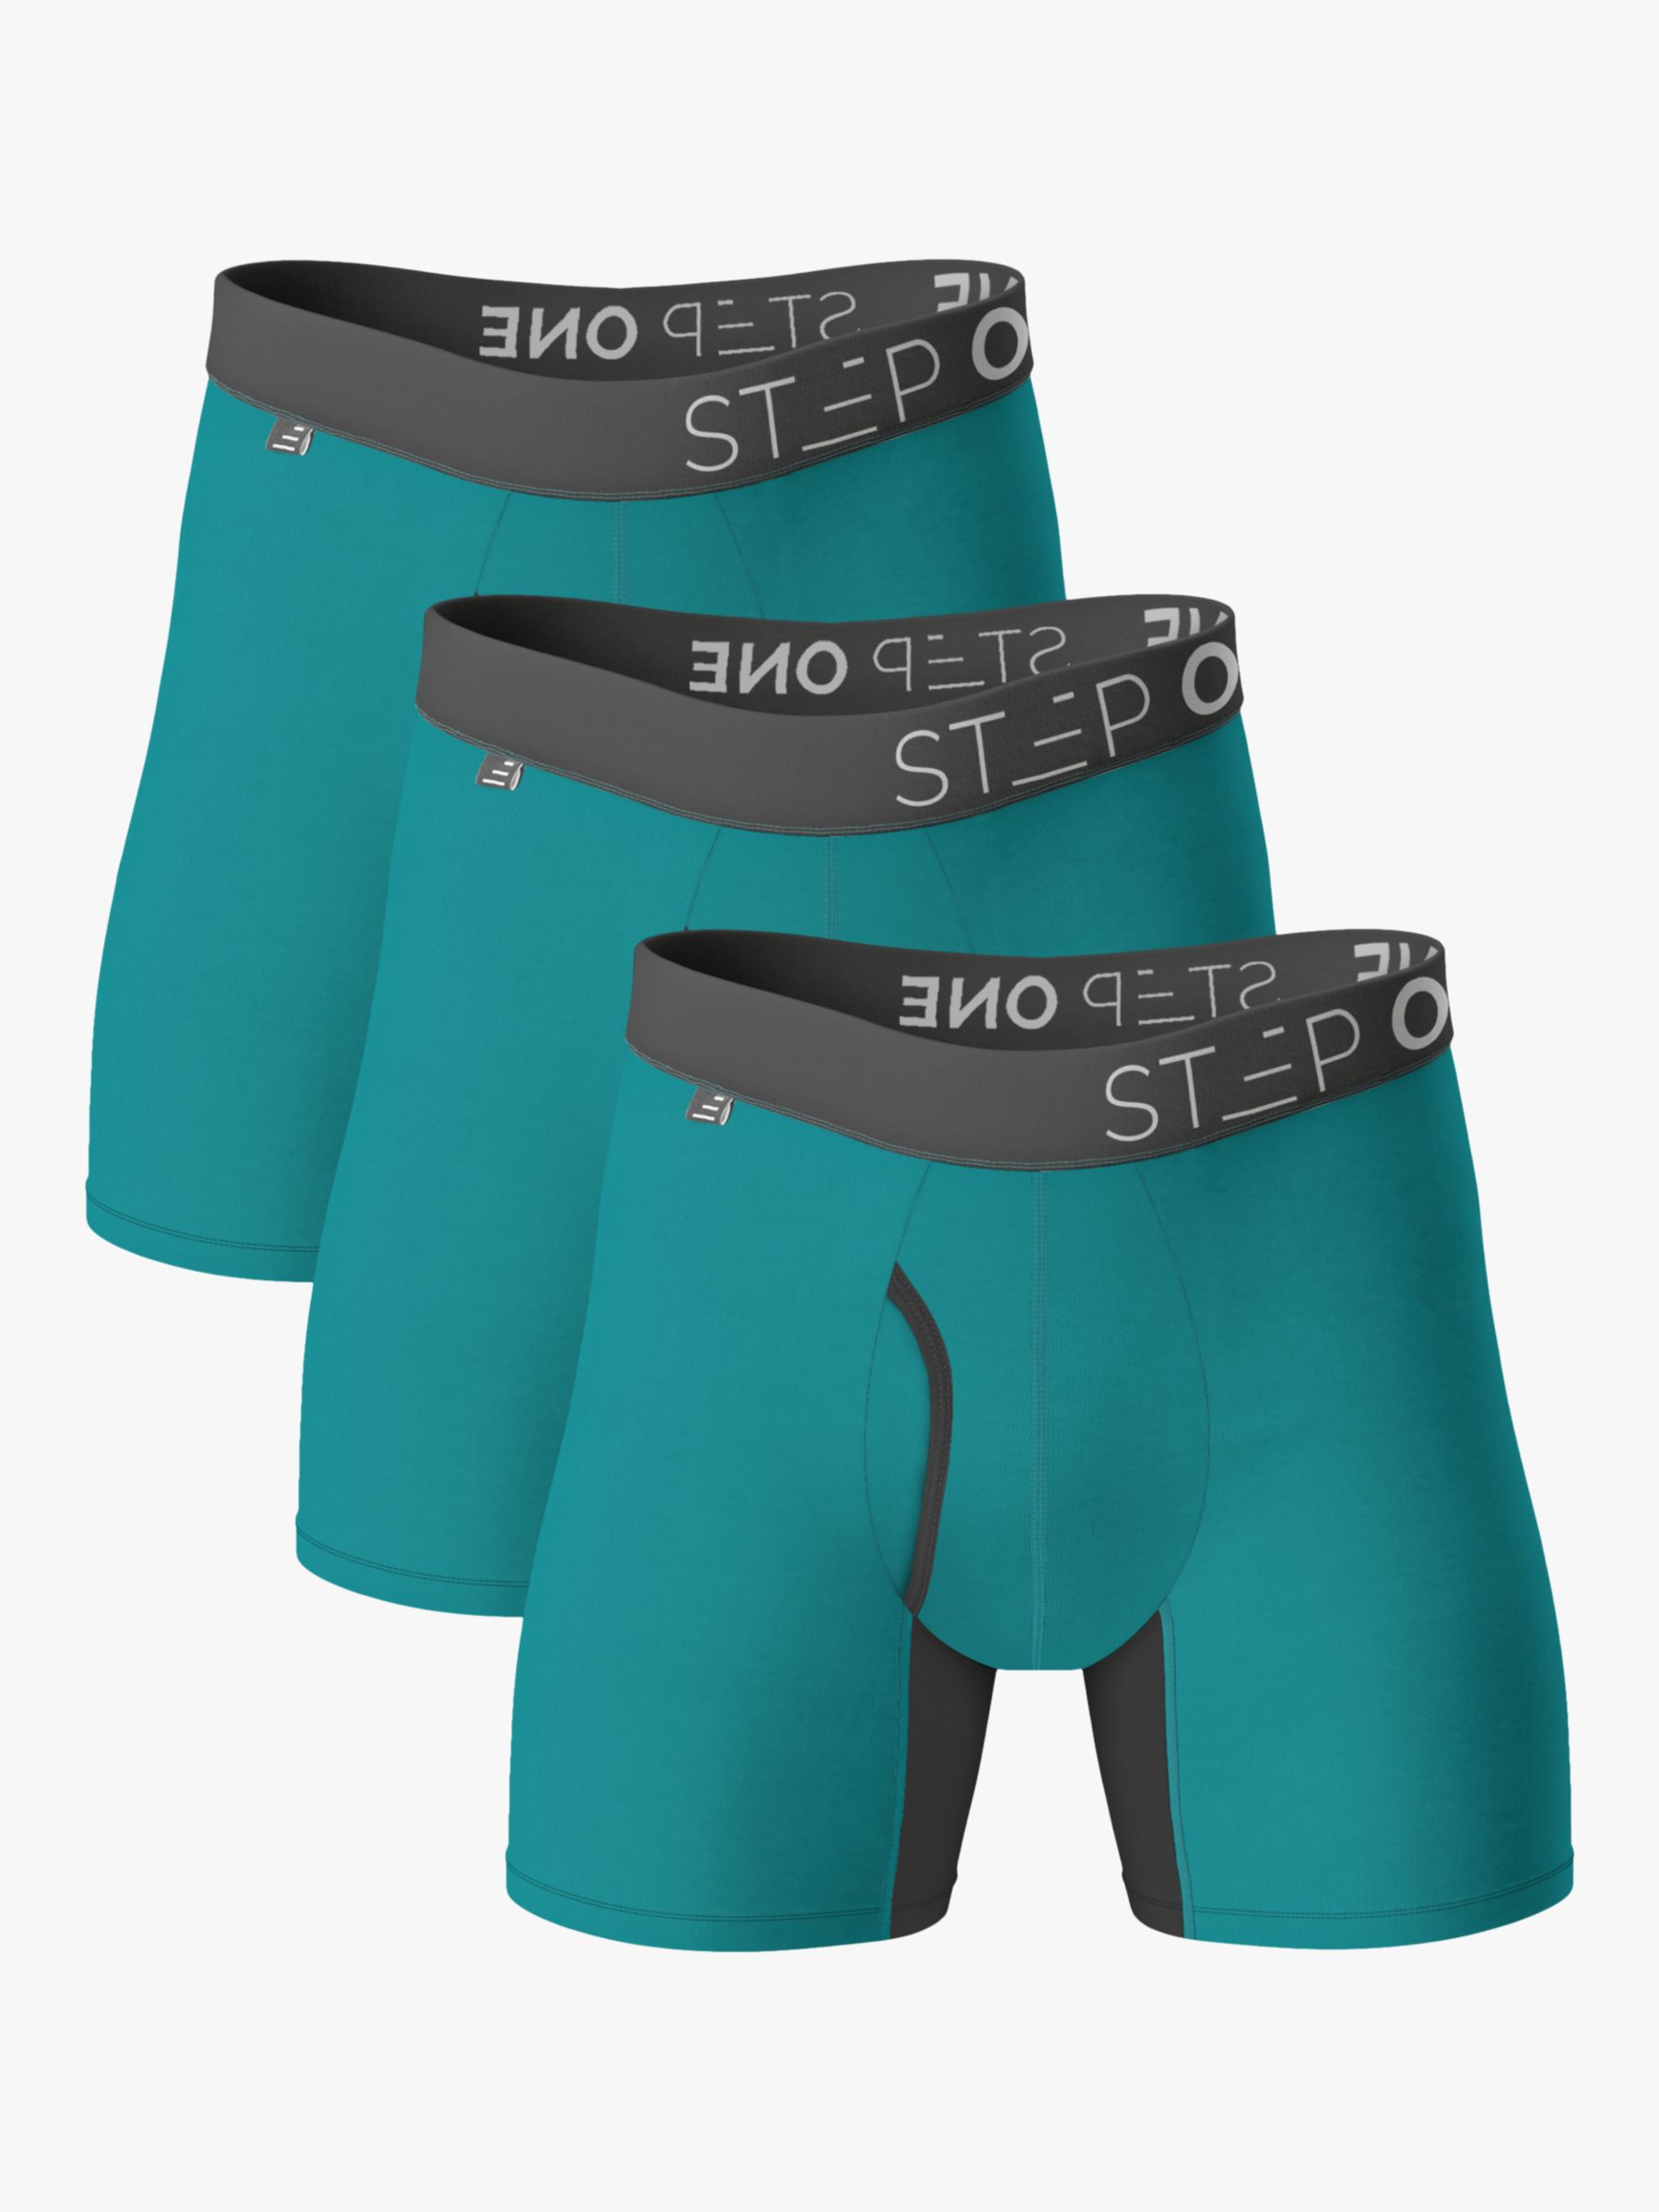 Boxer Brief - Snowballs  Step One Men's Bamboo Underwear